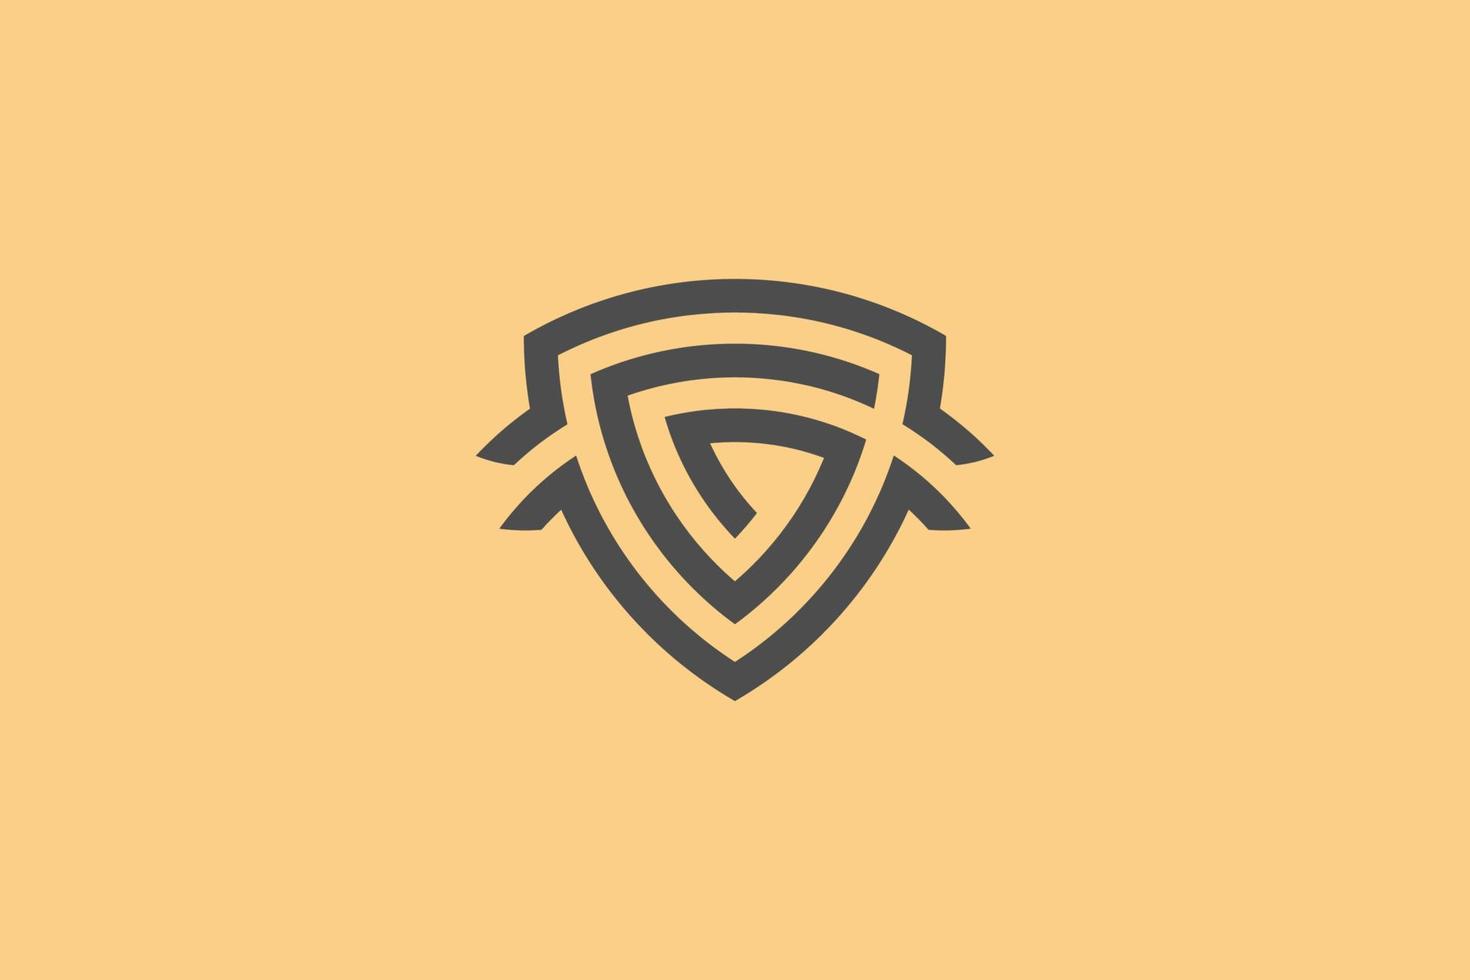 logo du bouclier g. lettre g dans le bouclier . conception de logo forte et audacieuse. logo g moderne et épuré. illustration vectorielle vecteur